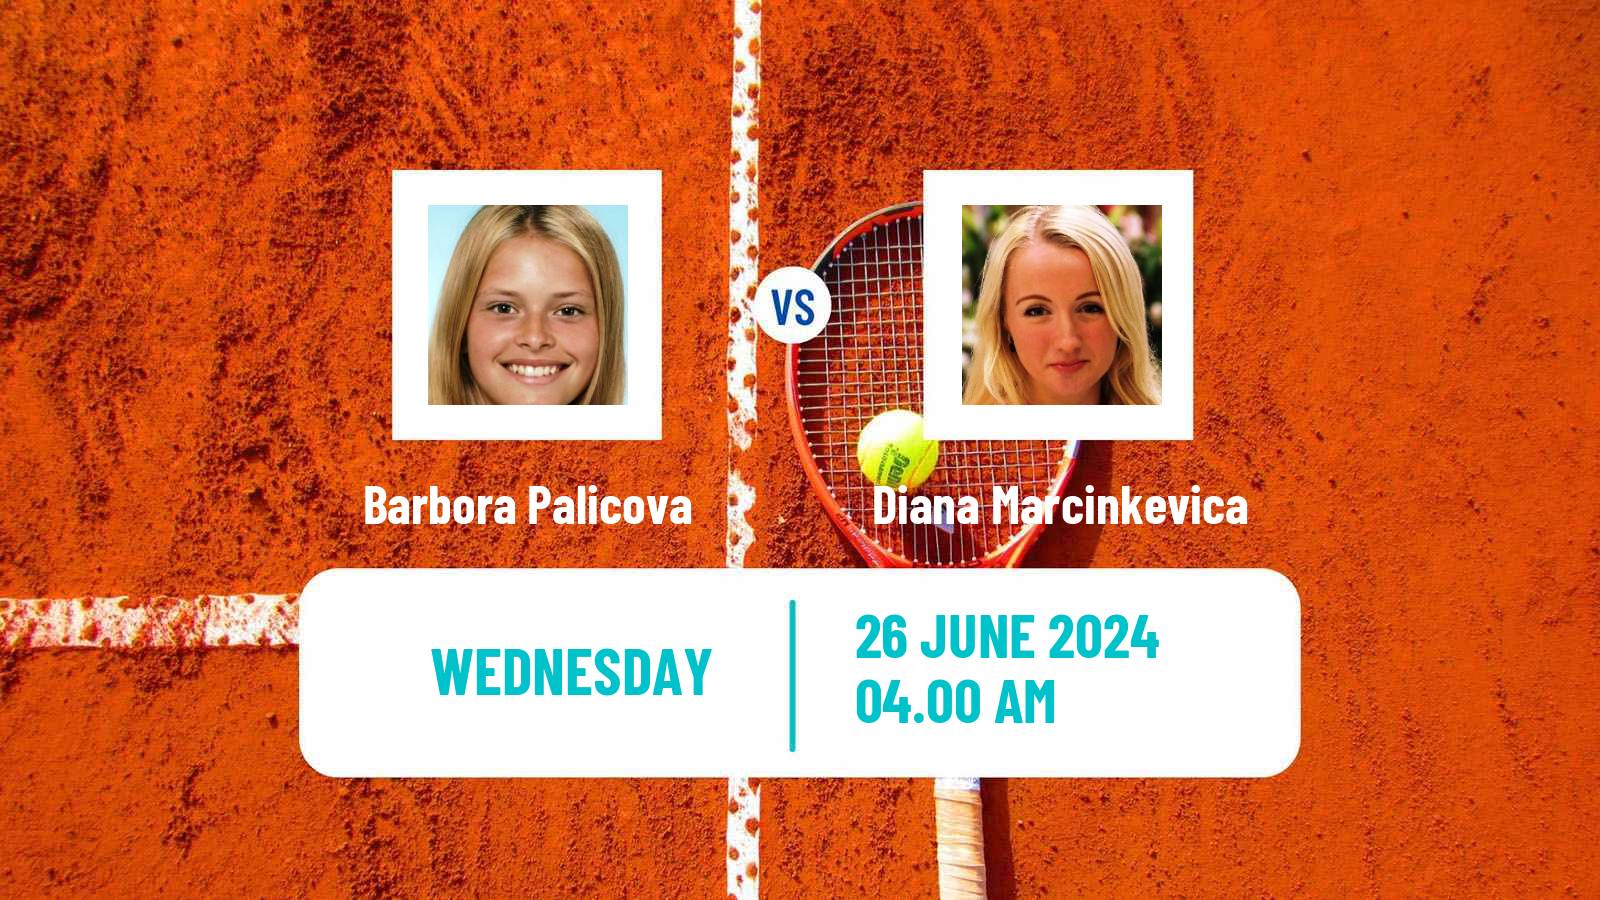 Tennis ITF W75 Doksy Stare Splavy Women Barbora Palicova - Diana Marcinkevica